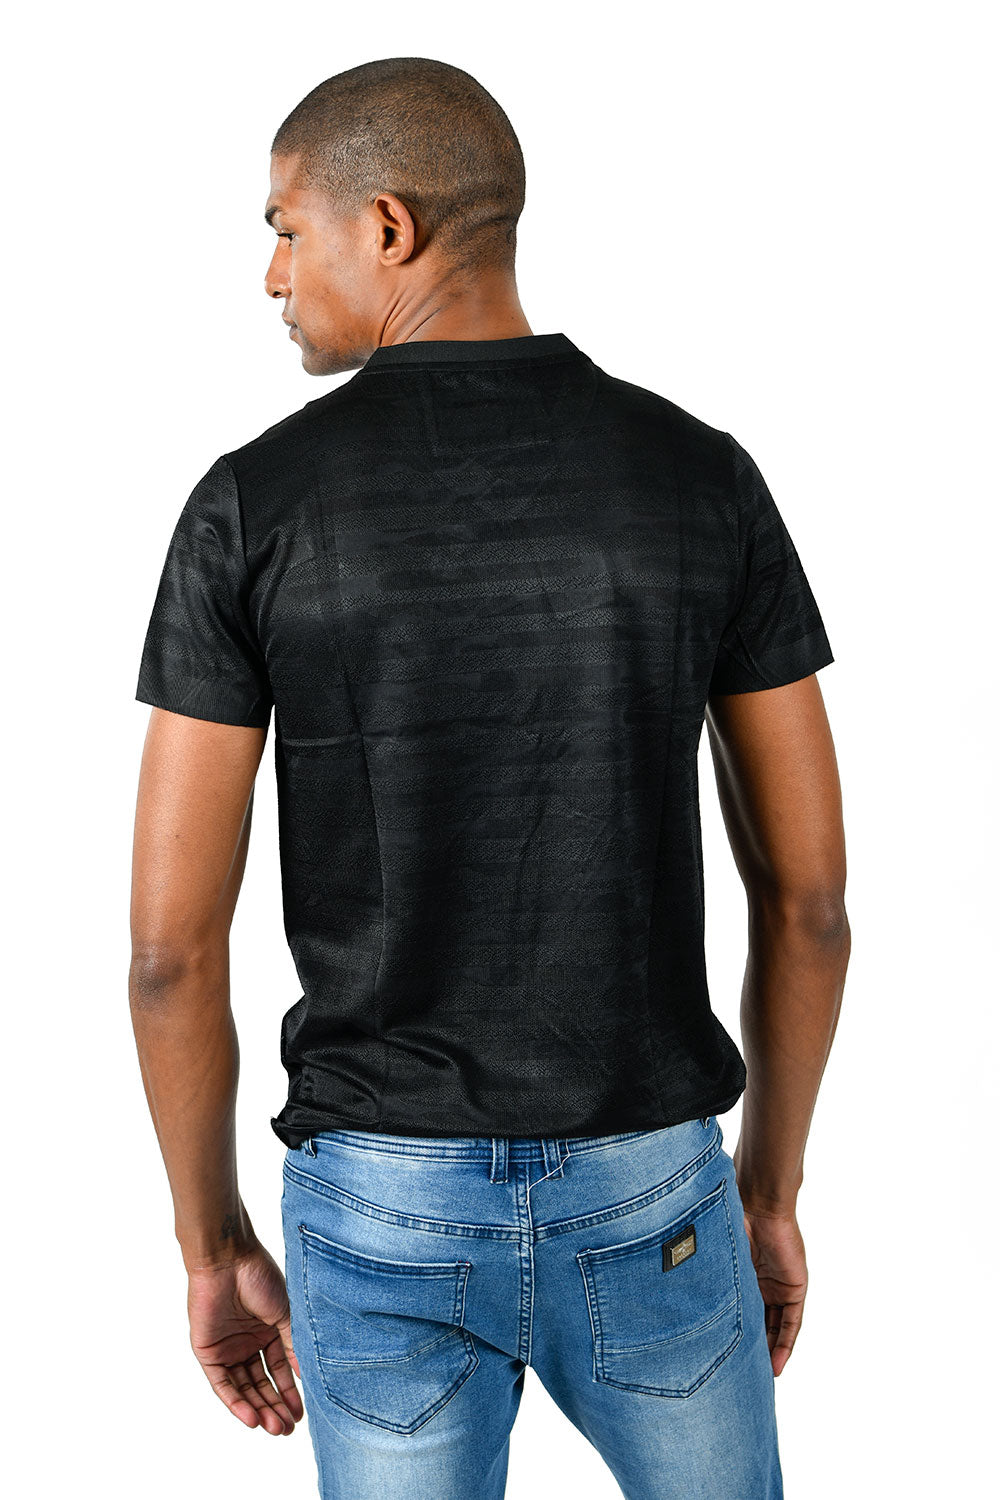 Barabas Men's Solid Color Black Graphic Tee V-Neck T-Shirts TV213